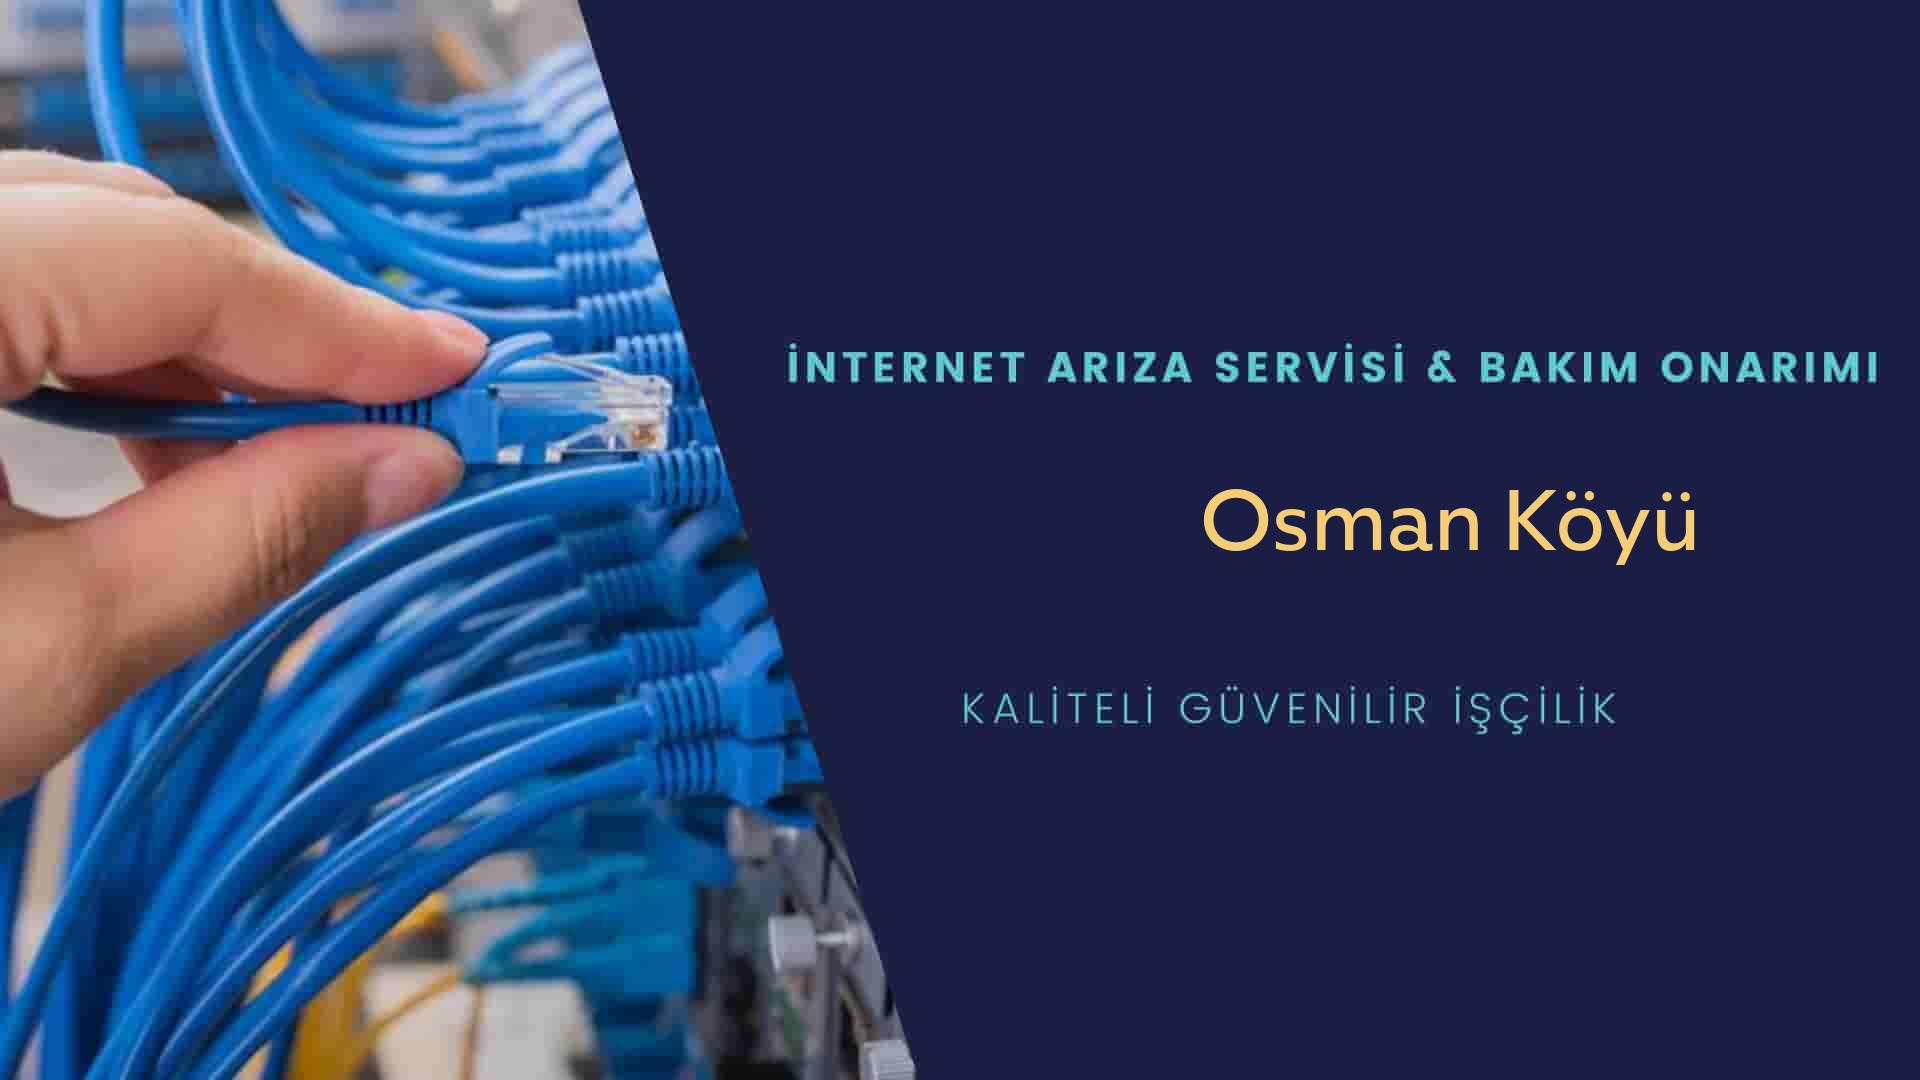 Osman Köyü internet kablosu çekimi yapan yerler veya elektrikçiler mi? arıyorsunuz doğru yerdesiniz o zaman sizlere 7/24 yardımcı olacak profesyonel ustalarımız bir telefon kadar yakındır size.